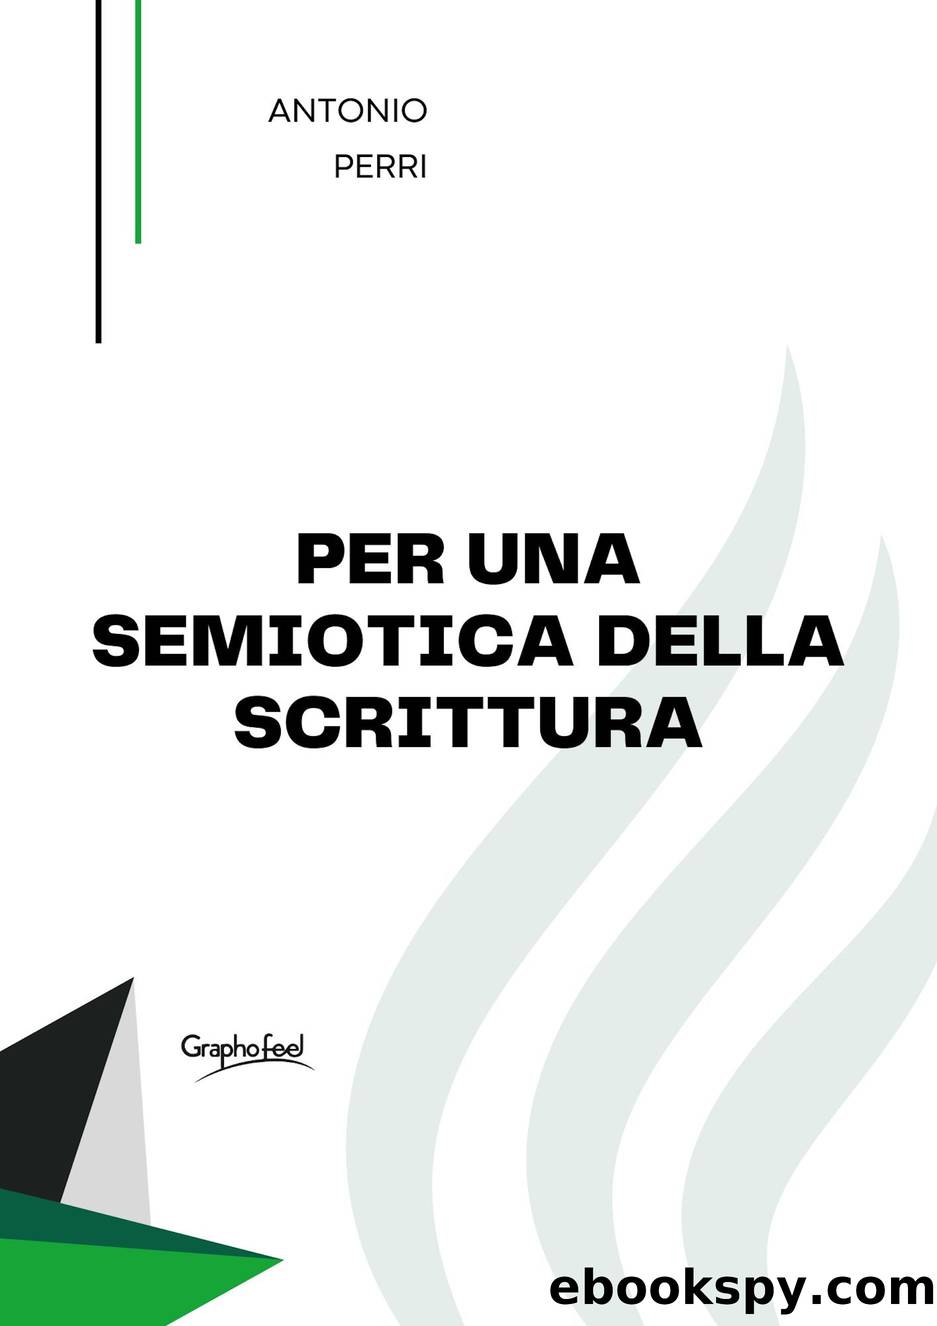 Per una semiotica della scrittura by Antonio Perri